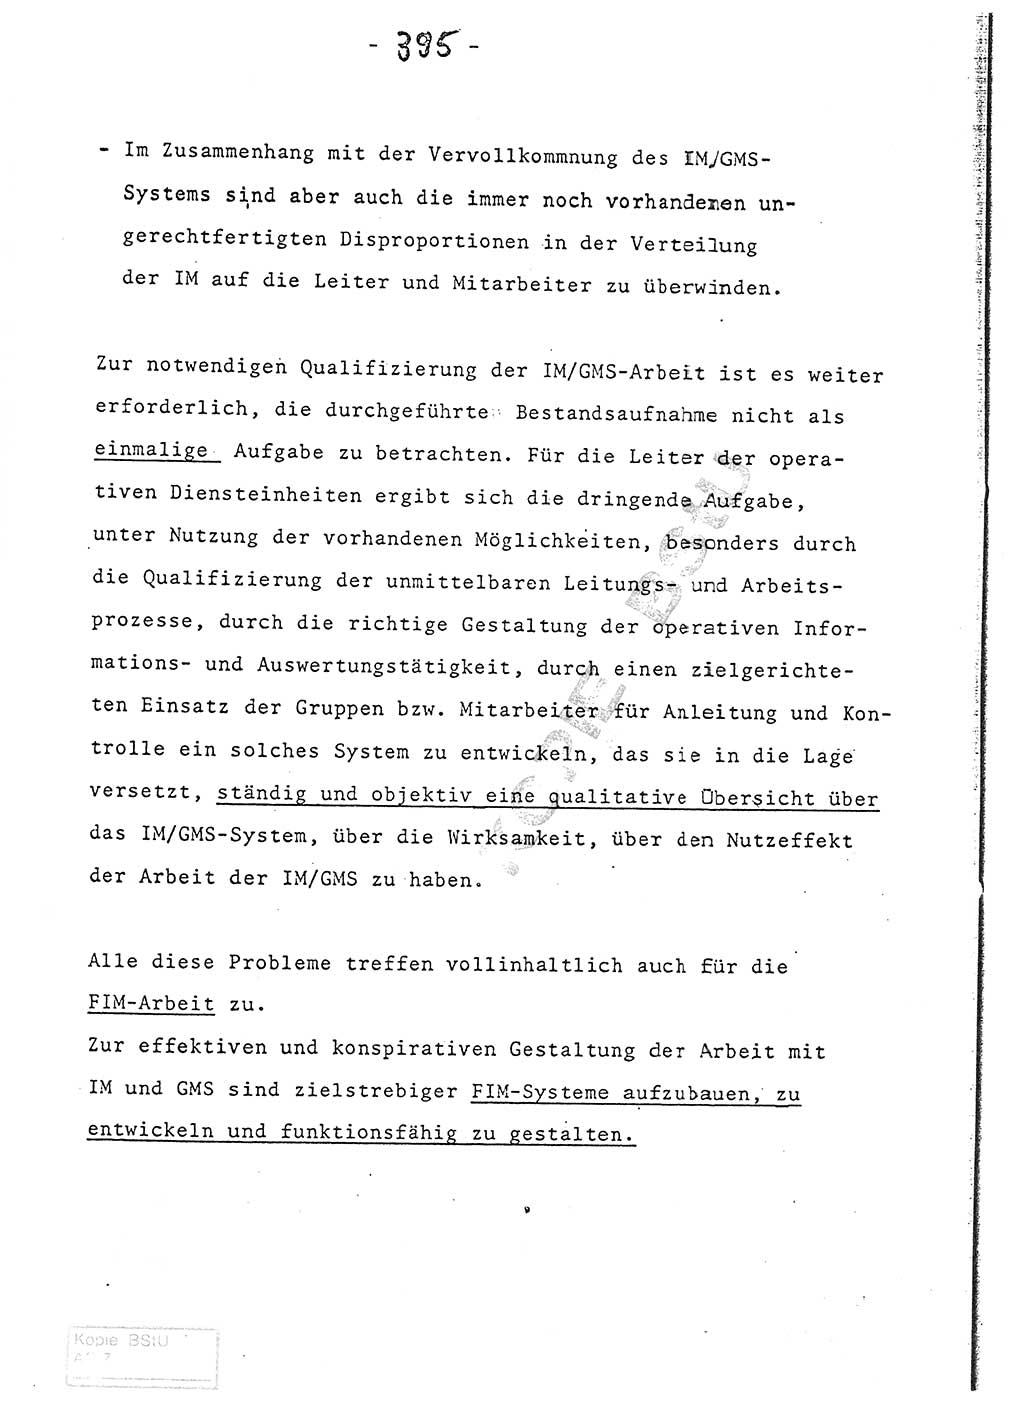 Referat (Entwurf) des Genossen Minister (Generaloberst Erich Mielke) auf der Dienstkonferenz 1972, Ministerium für Staatssicherheit (MfS) [Deutsche Demokratische Republik (DDR)], Der Minister, Geheime Verschlußsache (GVS) 008-150/72, Berlin 25.2.1972, Seite 395 (Ref. Entw. DK MfS DDR Min. GVS 008-150/72 1972, S. 395)